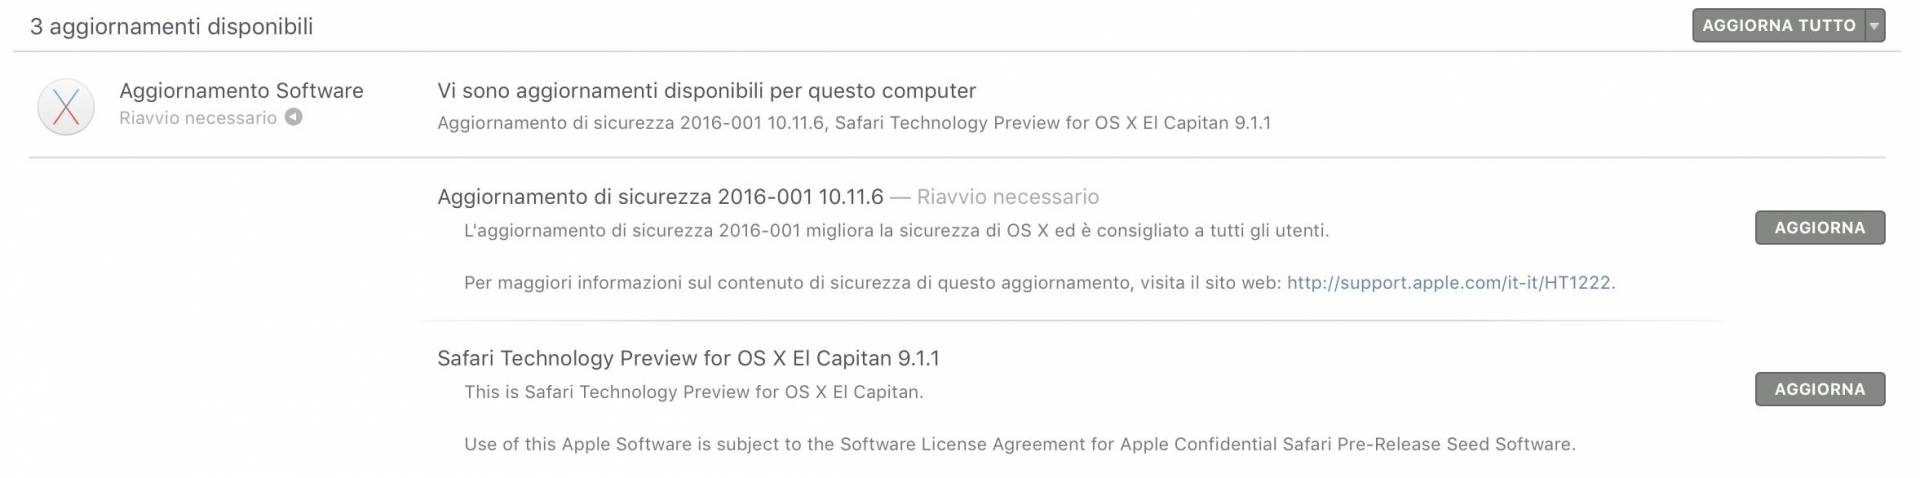 OS X Aggiornamento Di Sicurezza